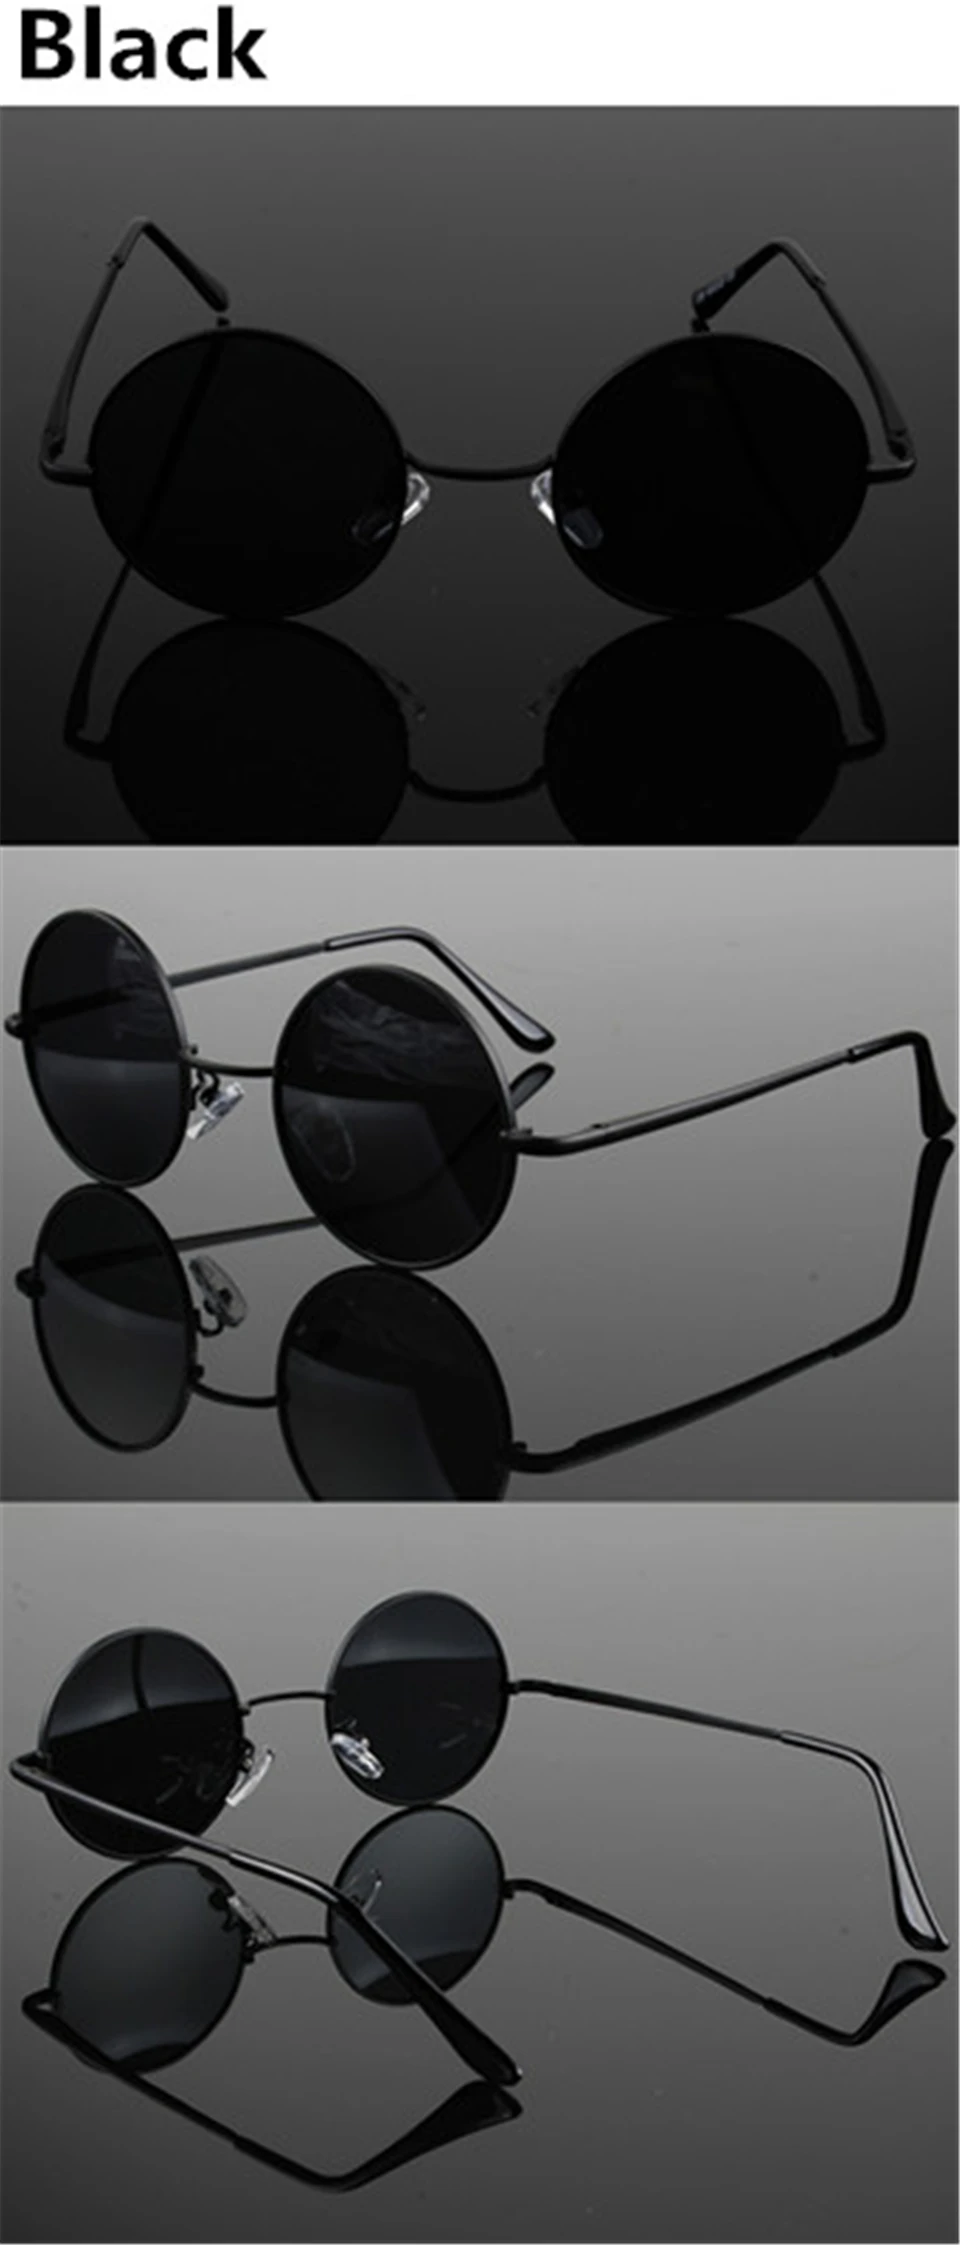 JAXIN Retro round sunglasses women fashion personality glasses men eye protection polarized oculos de sol masculino UV400 gafas sunglasses for women